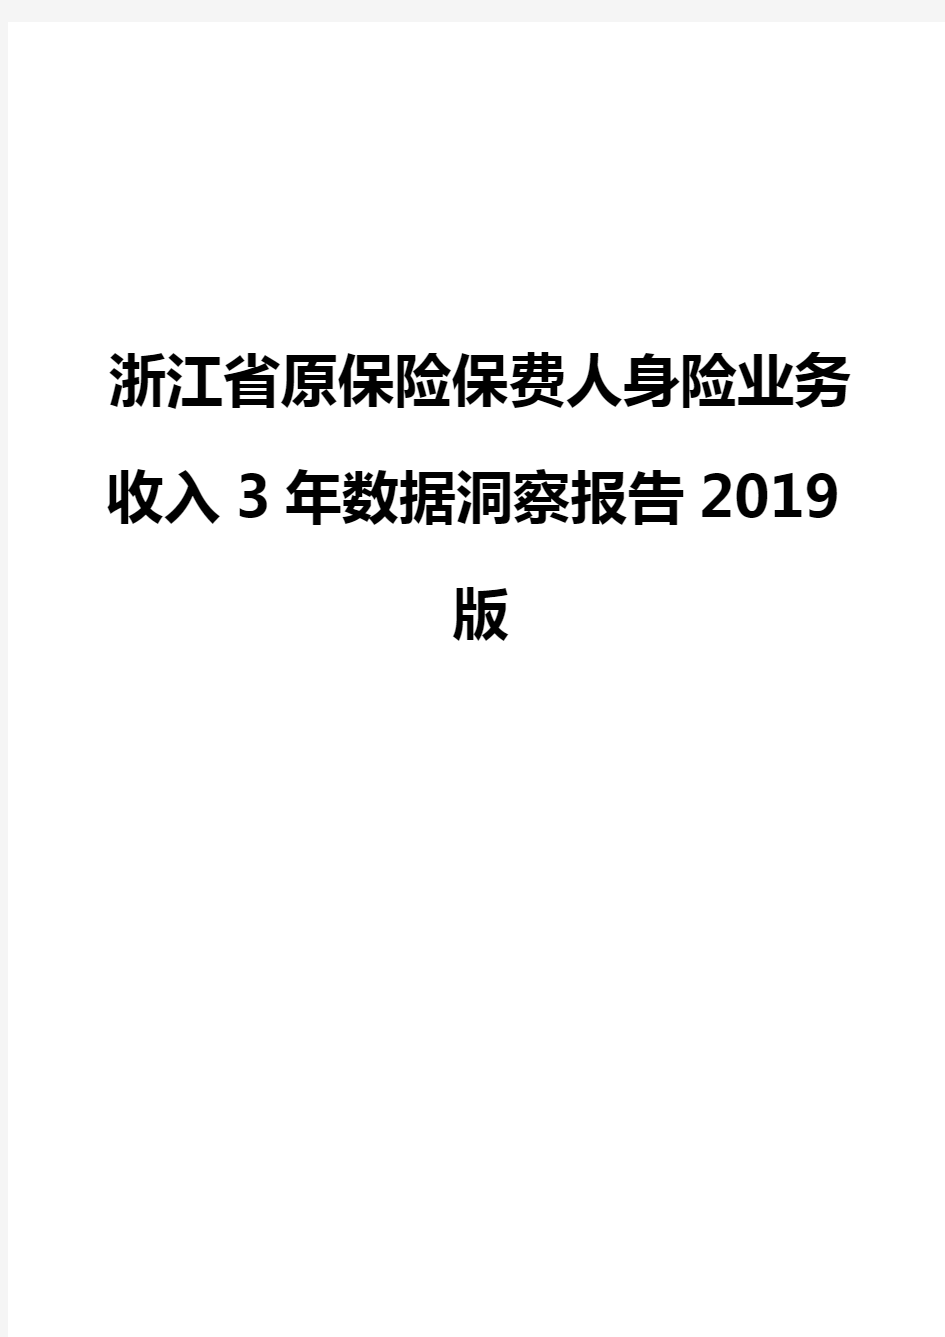 浙江省原保险保费人身险业务收入3年数据洞察报告2019版